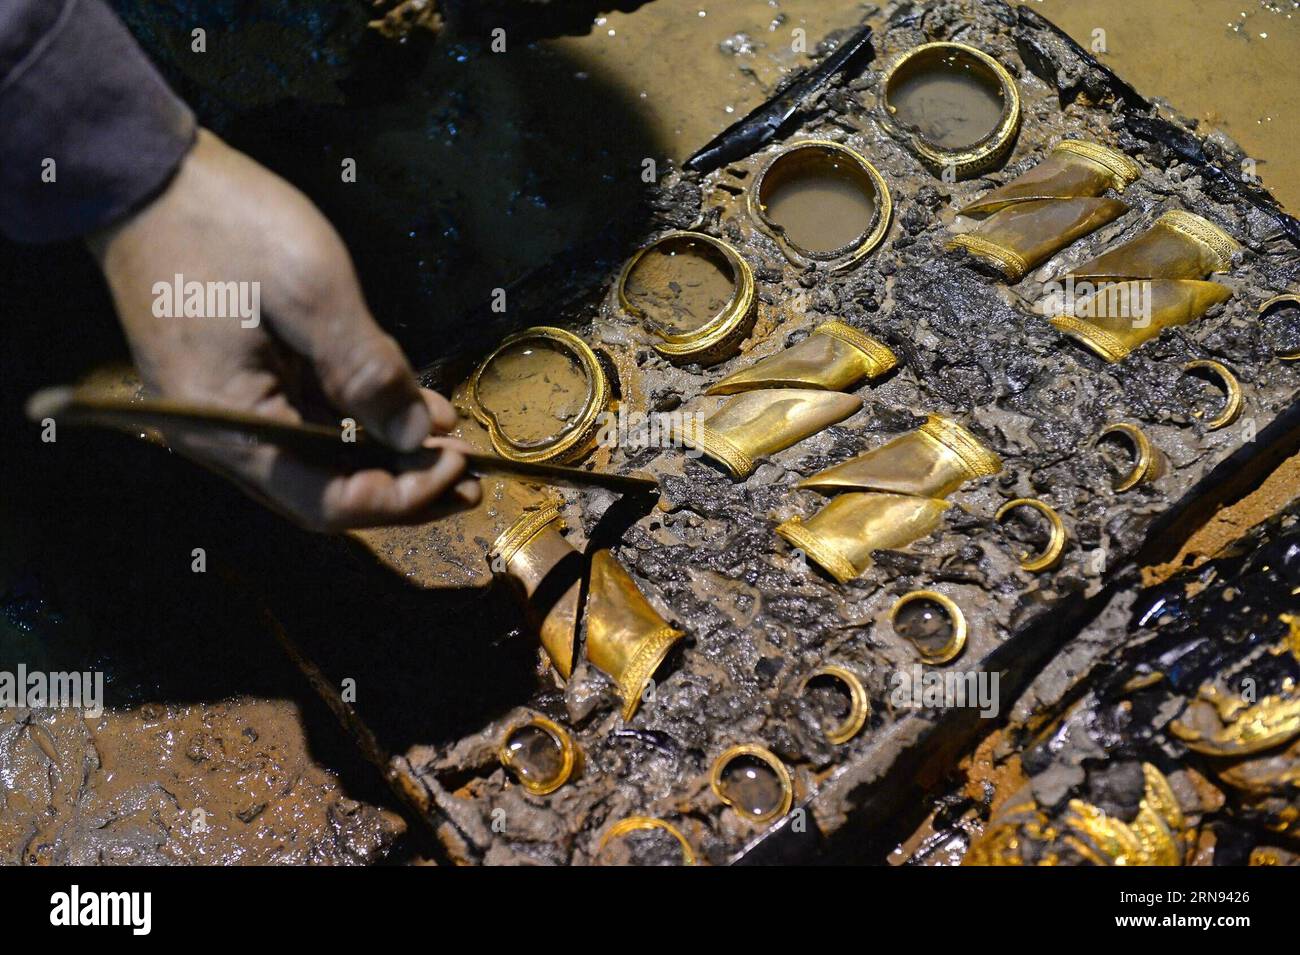 (151117) -- NANCHANG, 17. November 2015 -- ein Archäologe reinigt die hufförmigen Ingots in einem aristokratischen Grab, das aus der westlichen Han-Dynastie (206 v. Chr. - 24 n. Chr.) stammt, in Nanchang, der Hauptstadt der ostchinesischen Provinz Jiangxi, 17. November 2015. Chinesische Archäologen entdeckten am Dienstag 75 Goldmünzen und hufförmige Ingots im Grab. Die Goldobjekte -- 25 Goldhufe und 50 sehr große Goldmünzen -- sind die größte Einzelmenge von Goldgegenständen, die jemals in einem Grab der Han-Dynastie gefunden wurden. ) (zhs) CHINA-NANCHANG-ARCHAEOLOGY (CN) WanxXiang PUBLICATIONxNOTxINxCHN Nanchang Nov 17 2015 to ARCHAEOLOGIST Cleans T Stockfoto